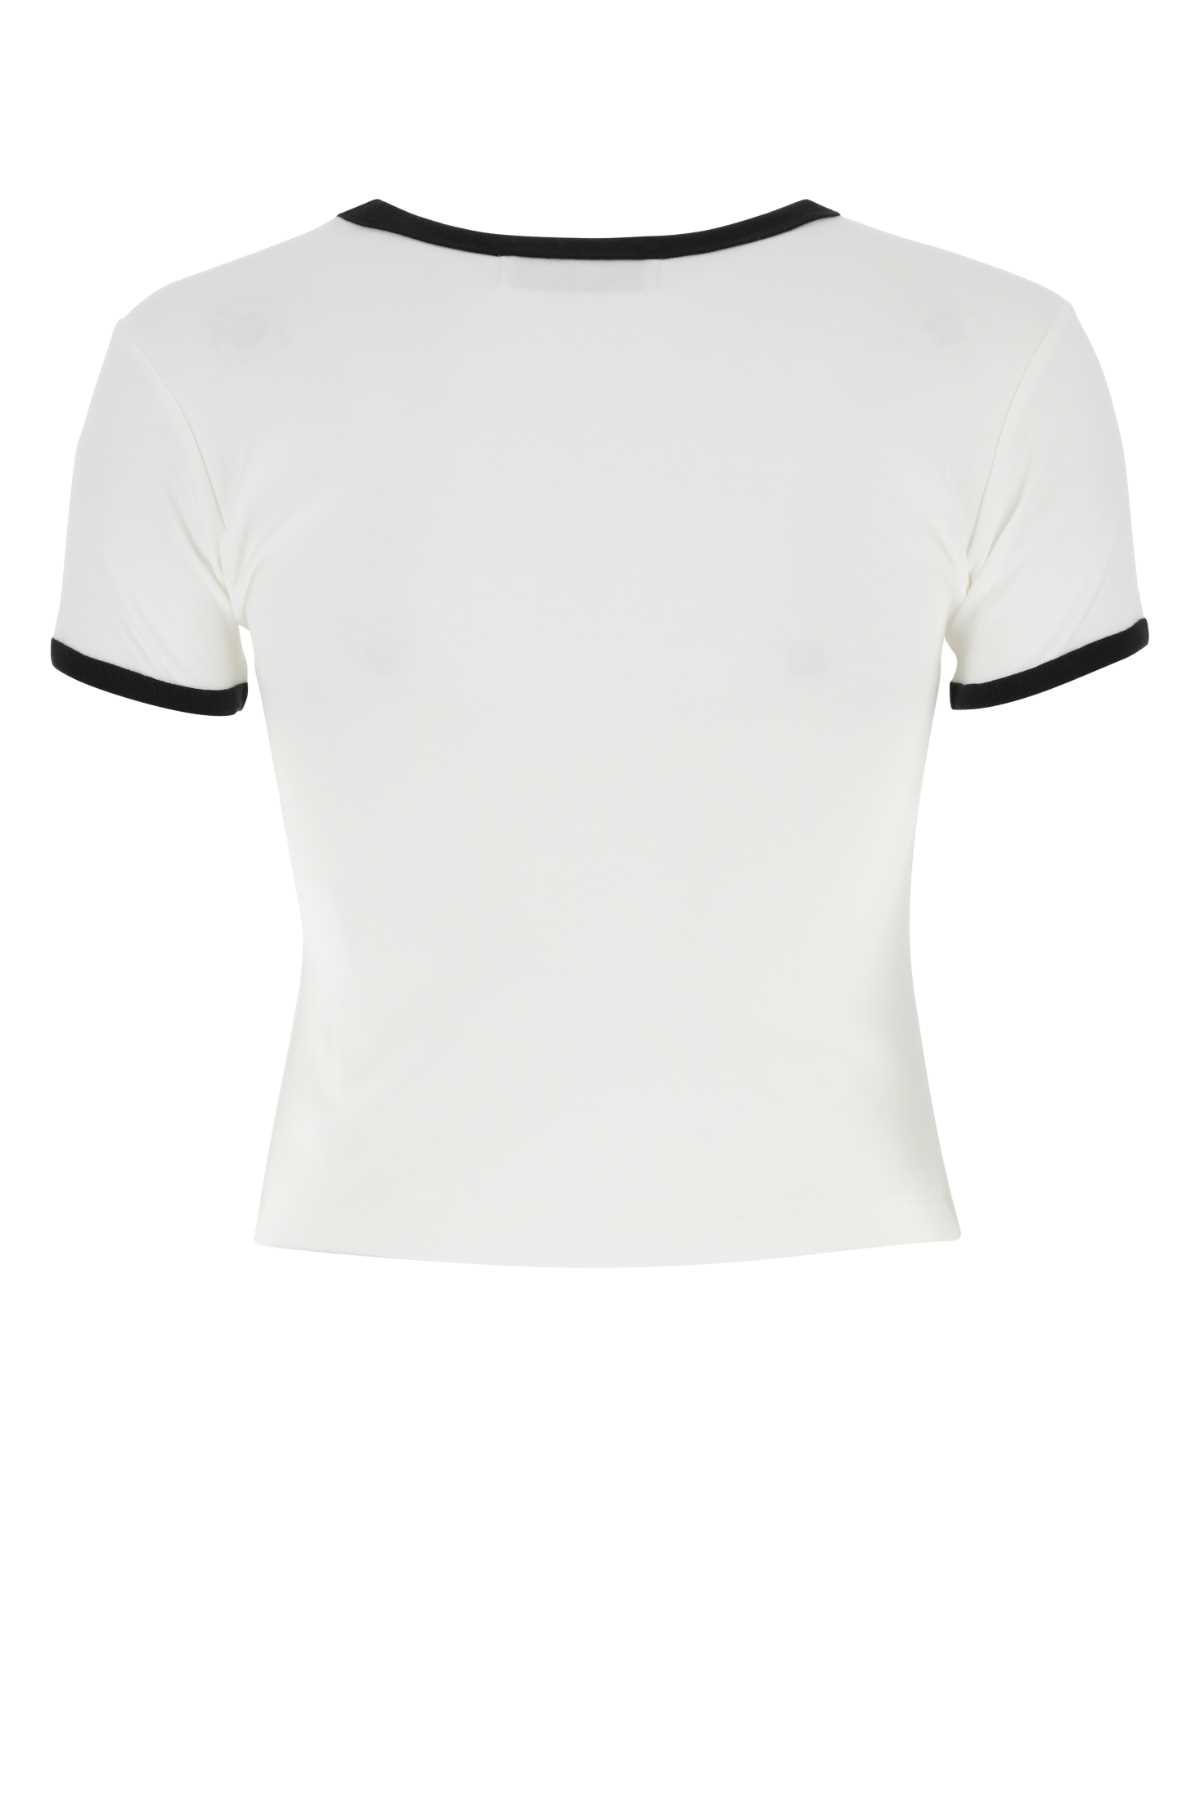 Ambush White Cotton T-shirt In Whiteblac